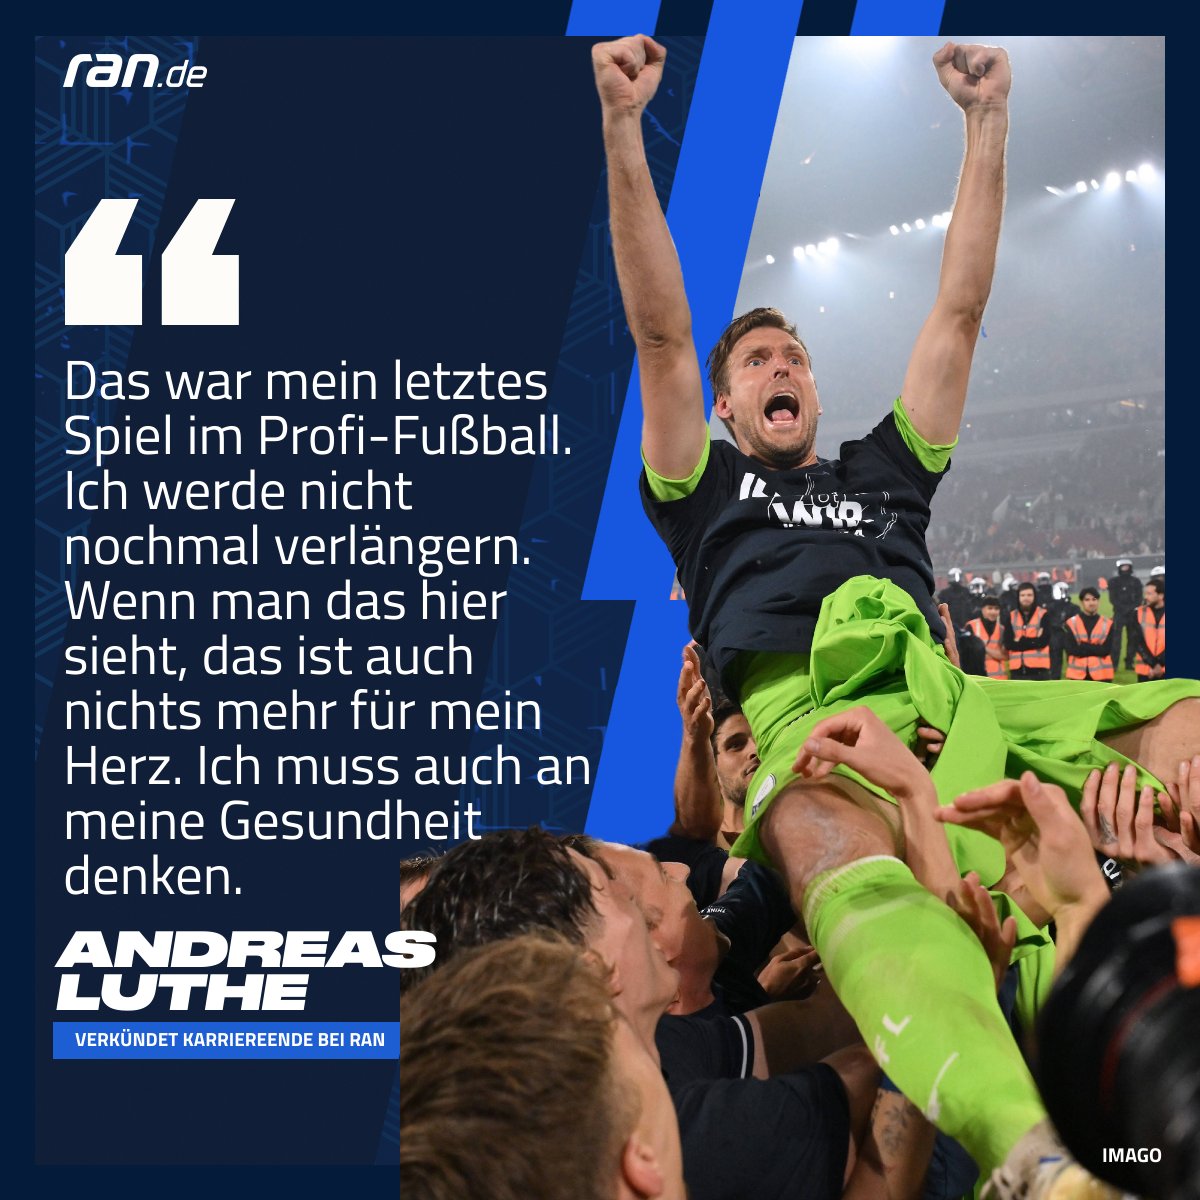 Nach dem Erfolg in der Relegation verkündet Andreas Luthe sein Karriereende am ran-Mikro - emotionaler kann es ohnehin nicht mehr werden! 😅#Relegation #ranBundesliga #F95BOC #Luthe